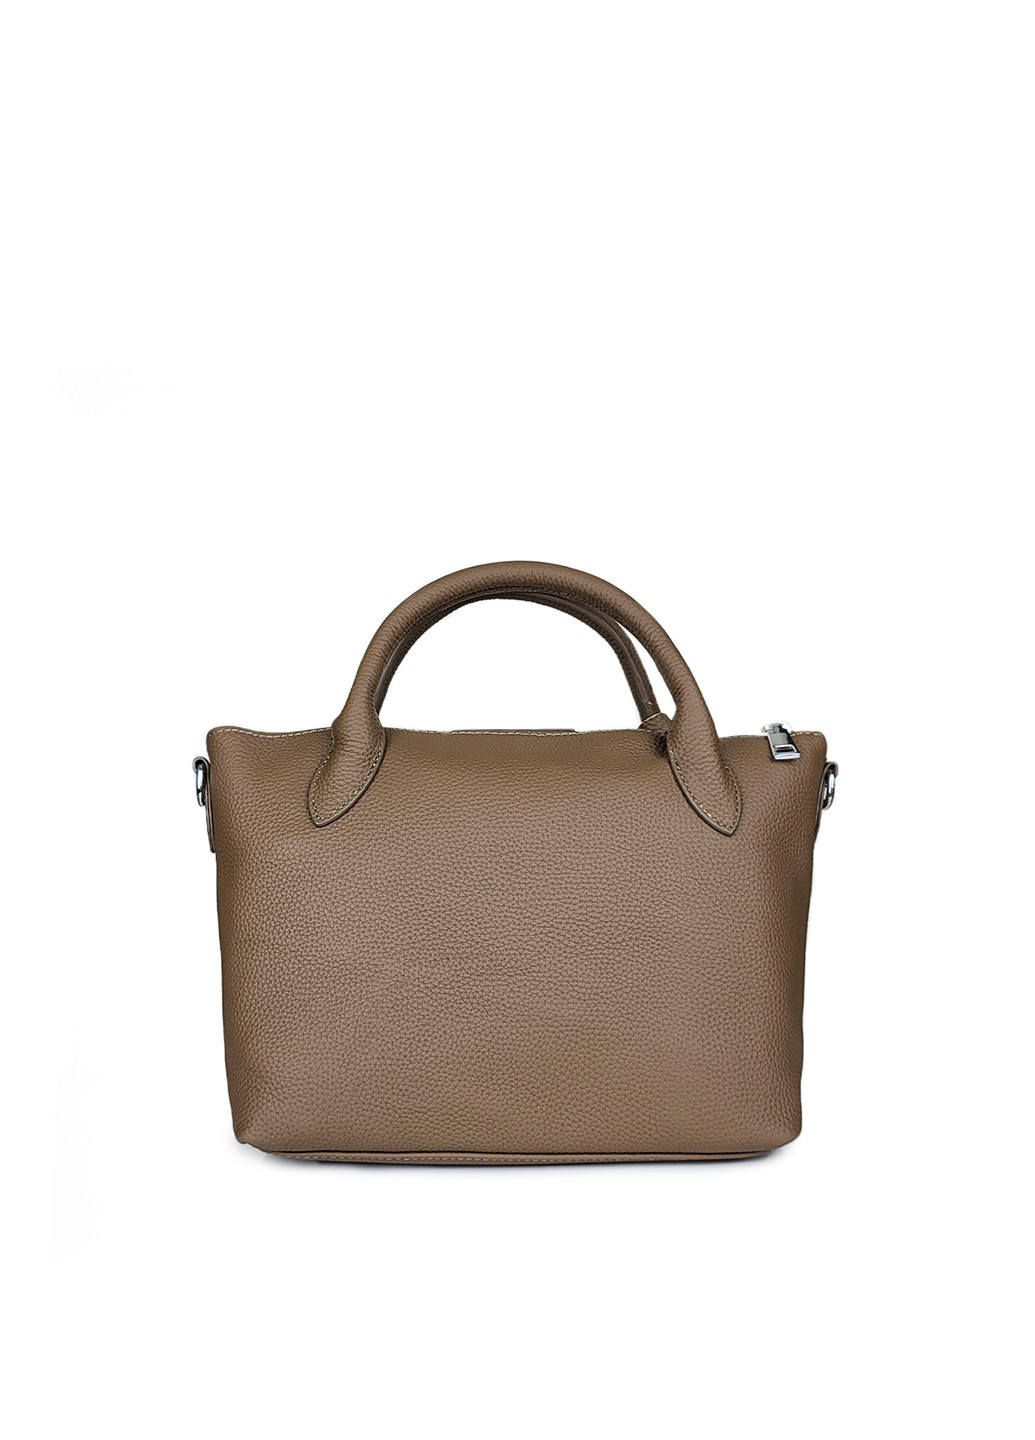 Шкіряна жіноча сумка середня коричнева,,7715 кор Fashion (276390288)